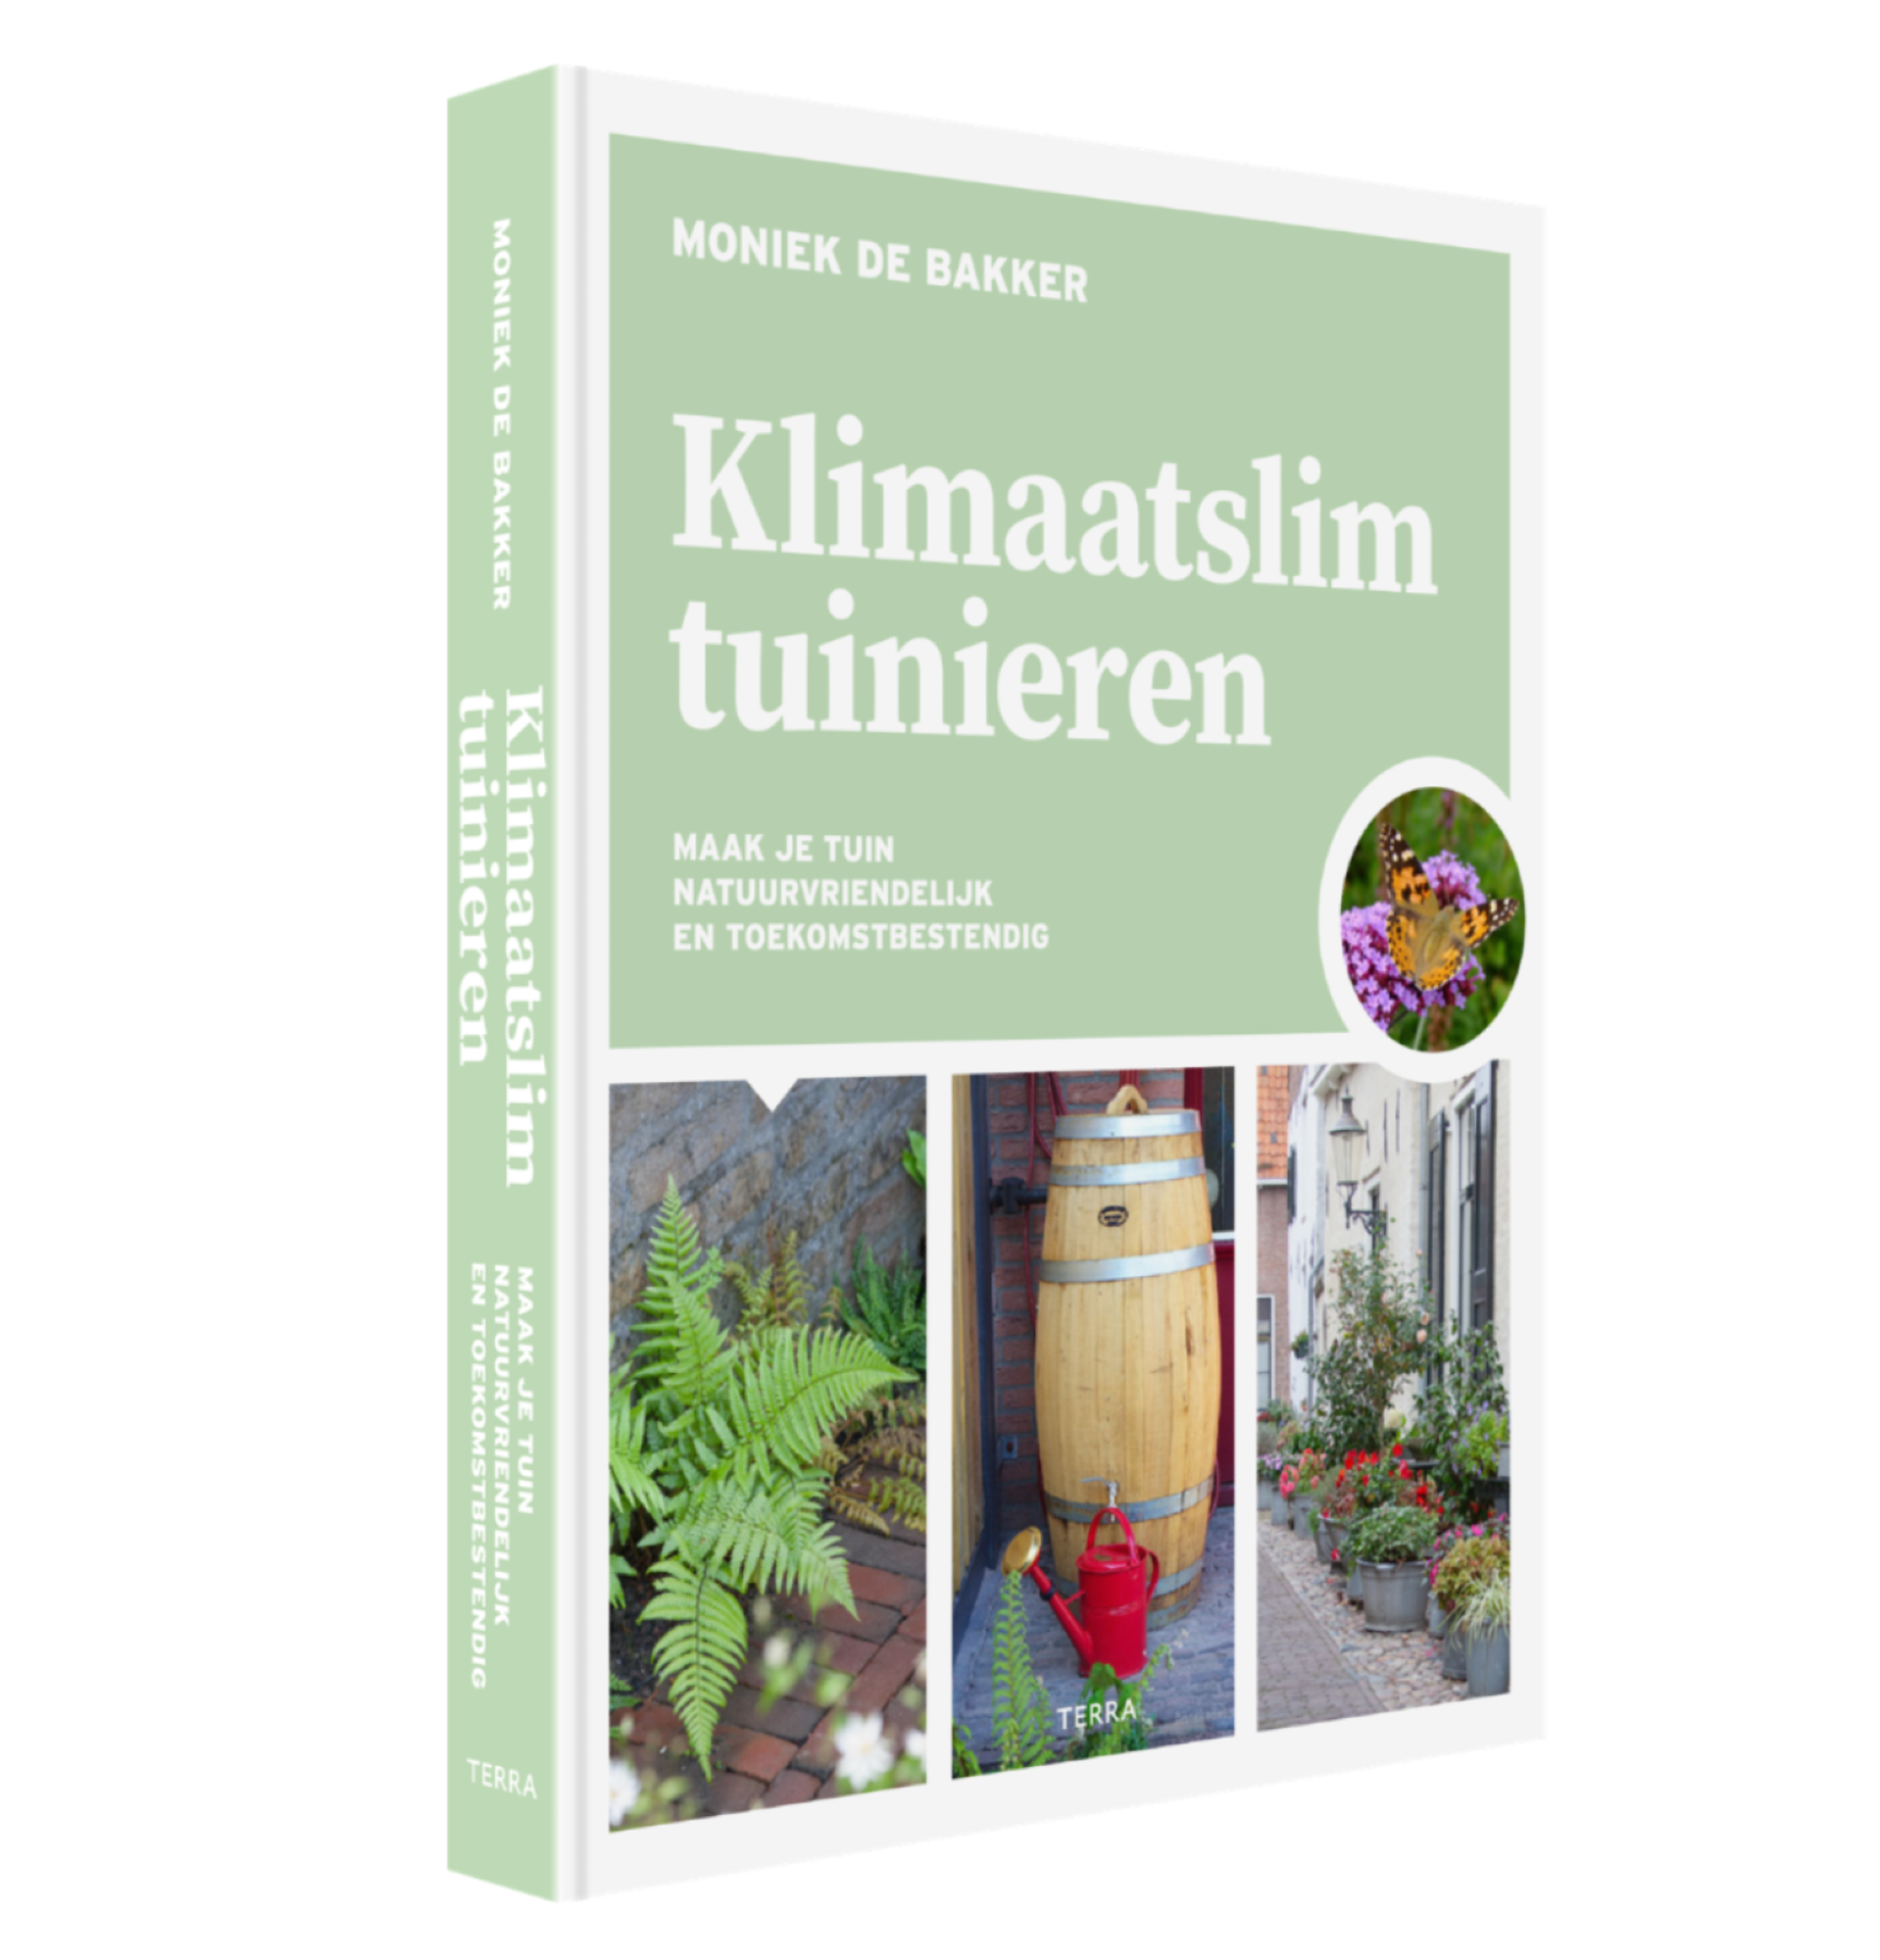 Handboek Klimaatslim tuinieren